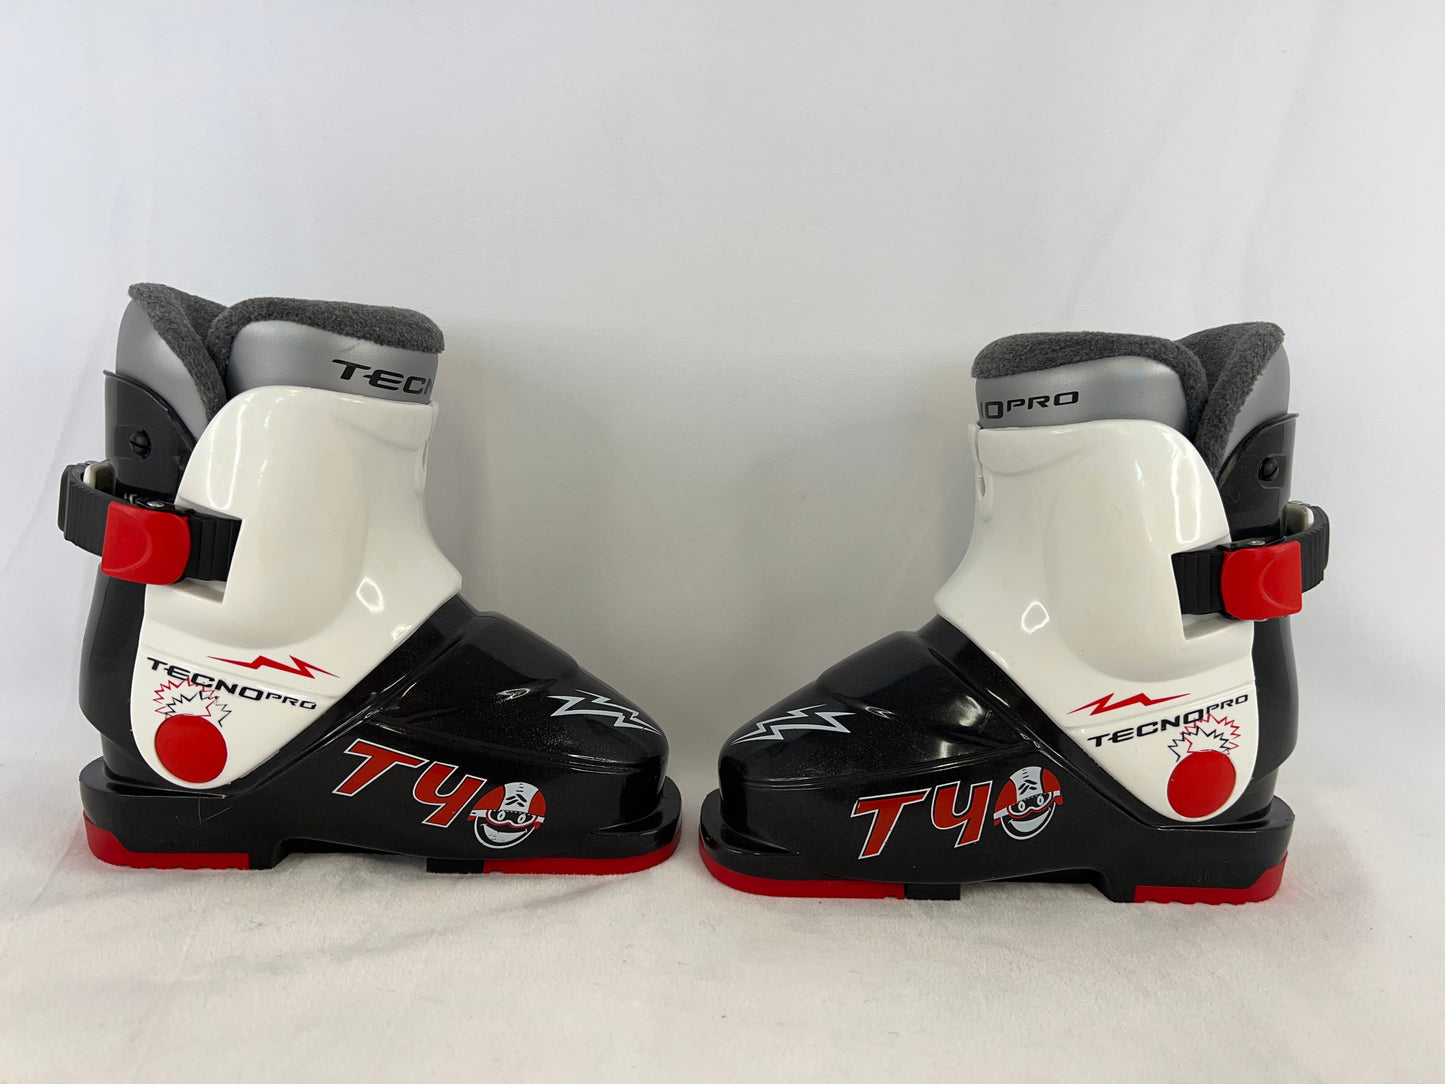 Ski Boots Mondo Size 16.0 Child Size 9  206 mm Tecno Pro Black White Red  Excellent New Demo Model